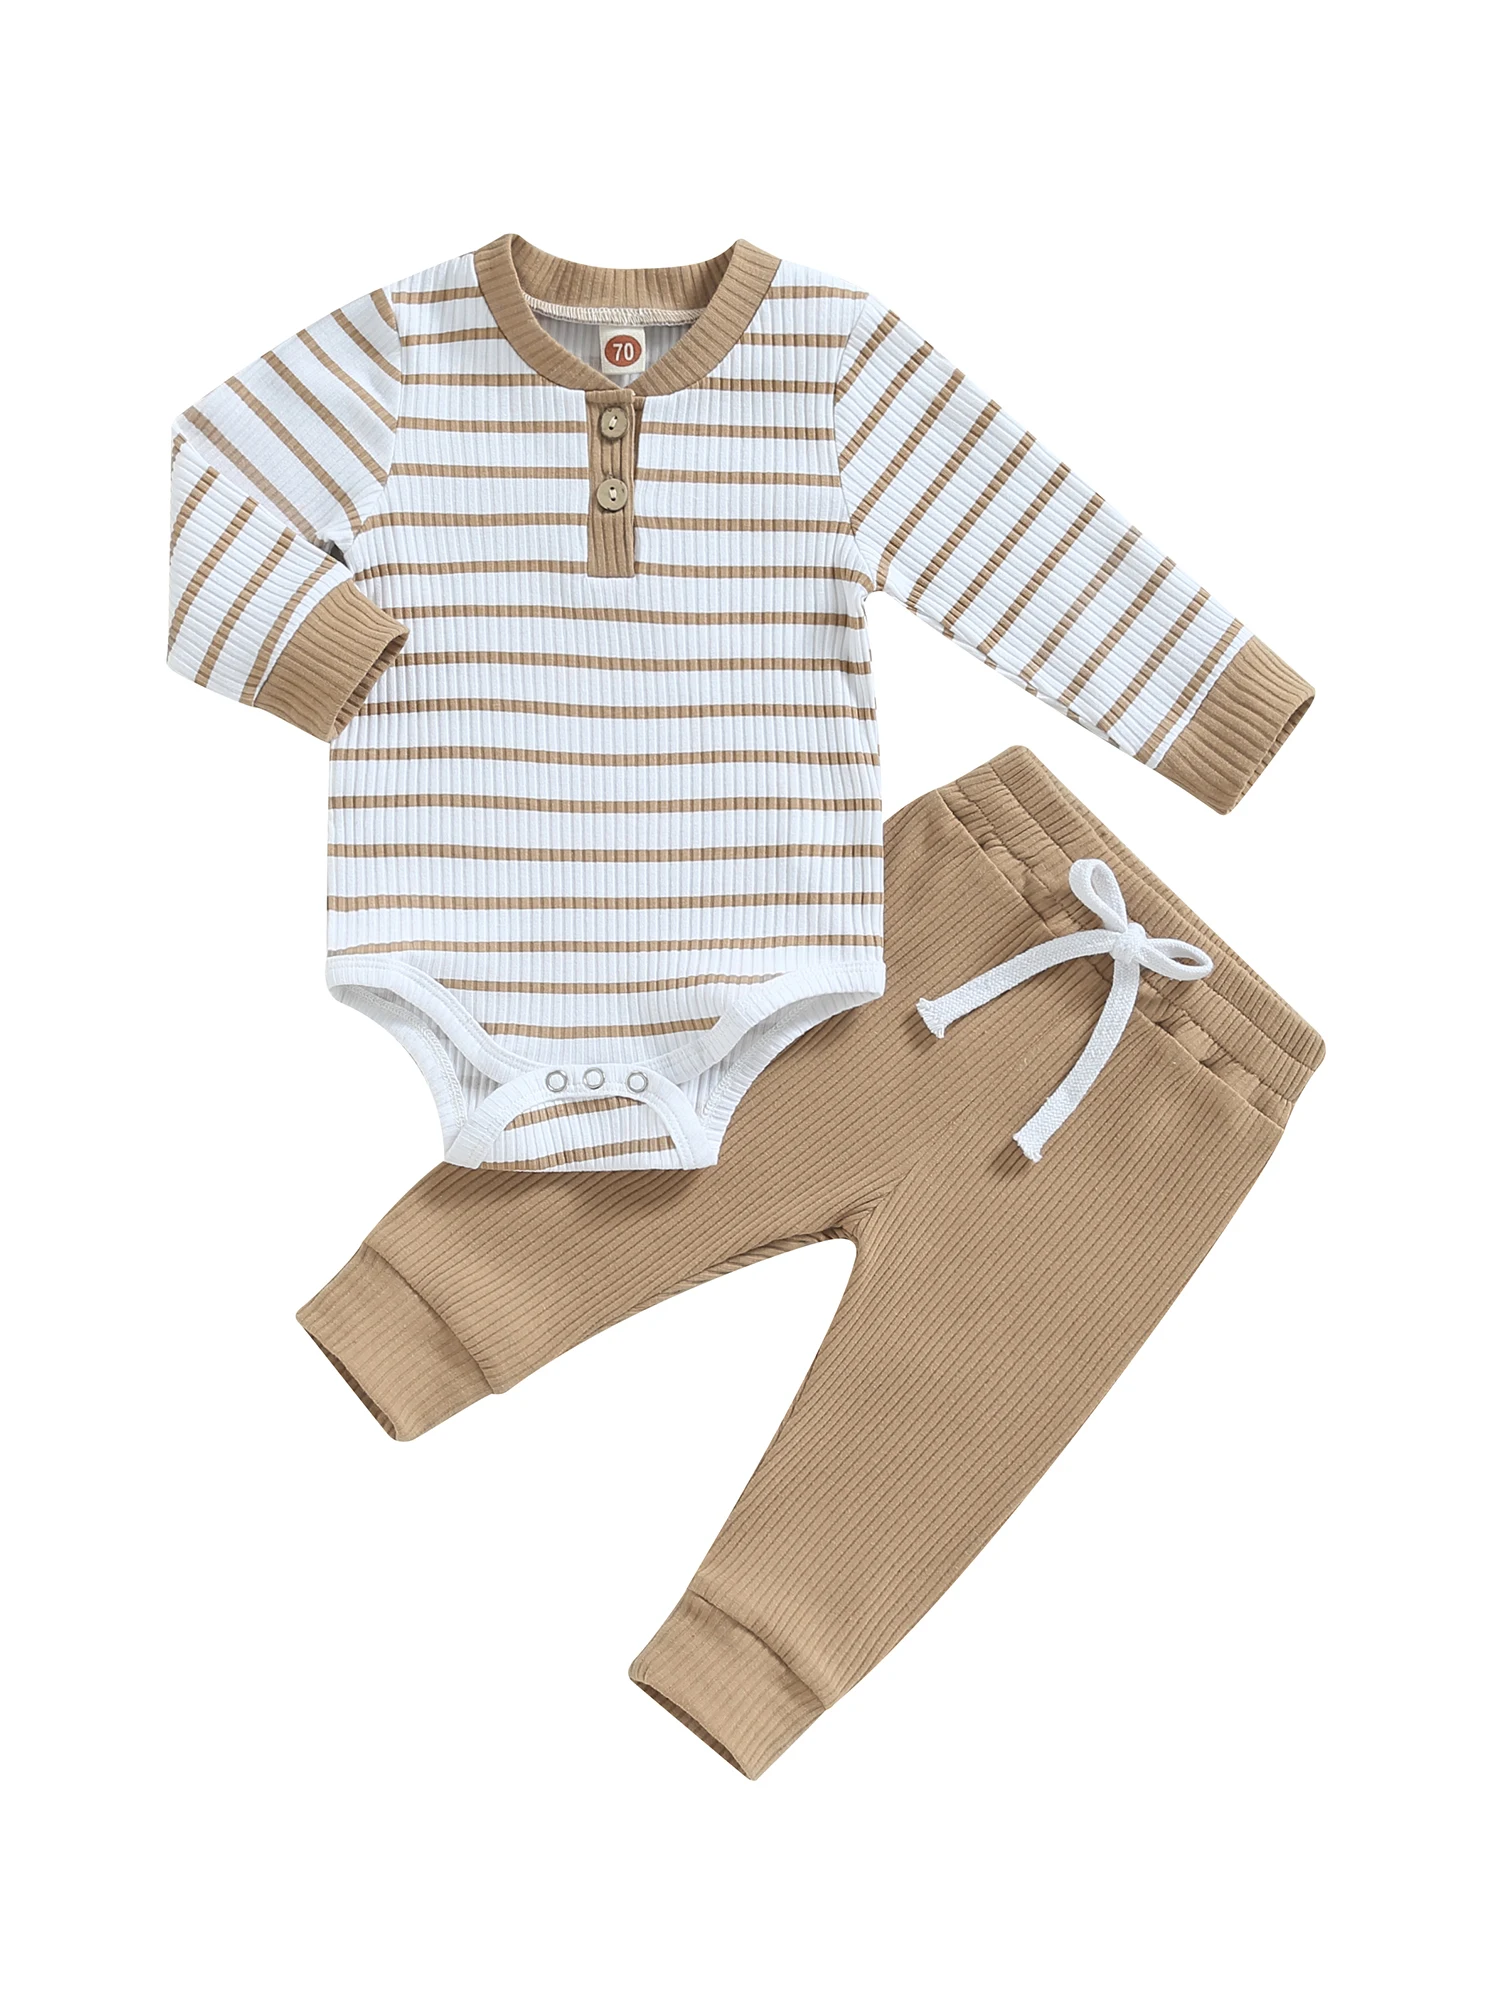 

NANYKNIGHTY осенняя одежда для маленьких мальчиков, ребристый трикотаж, длинный рукав, полосатый принт, комбинезон, брюки, комплект из 2 шт.